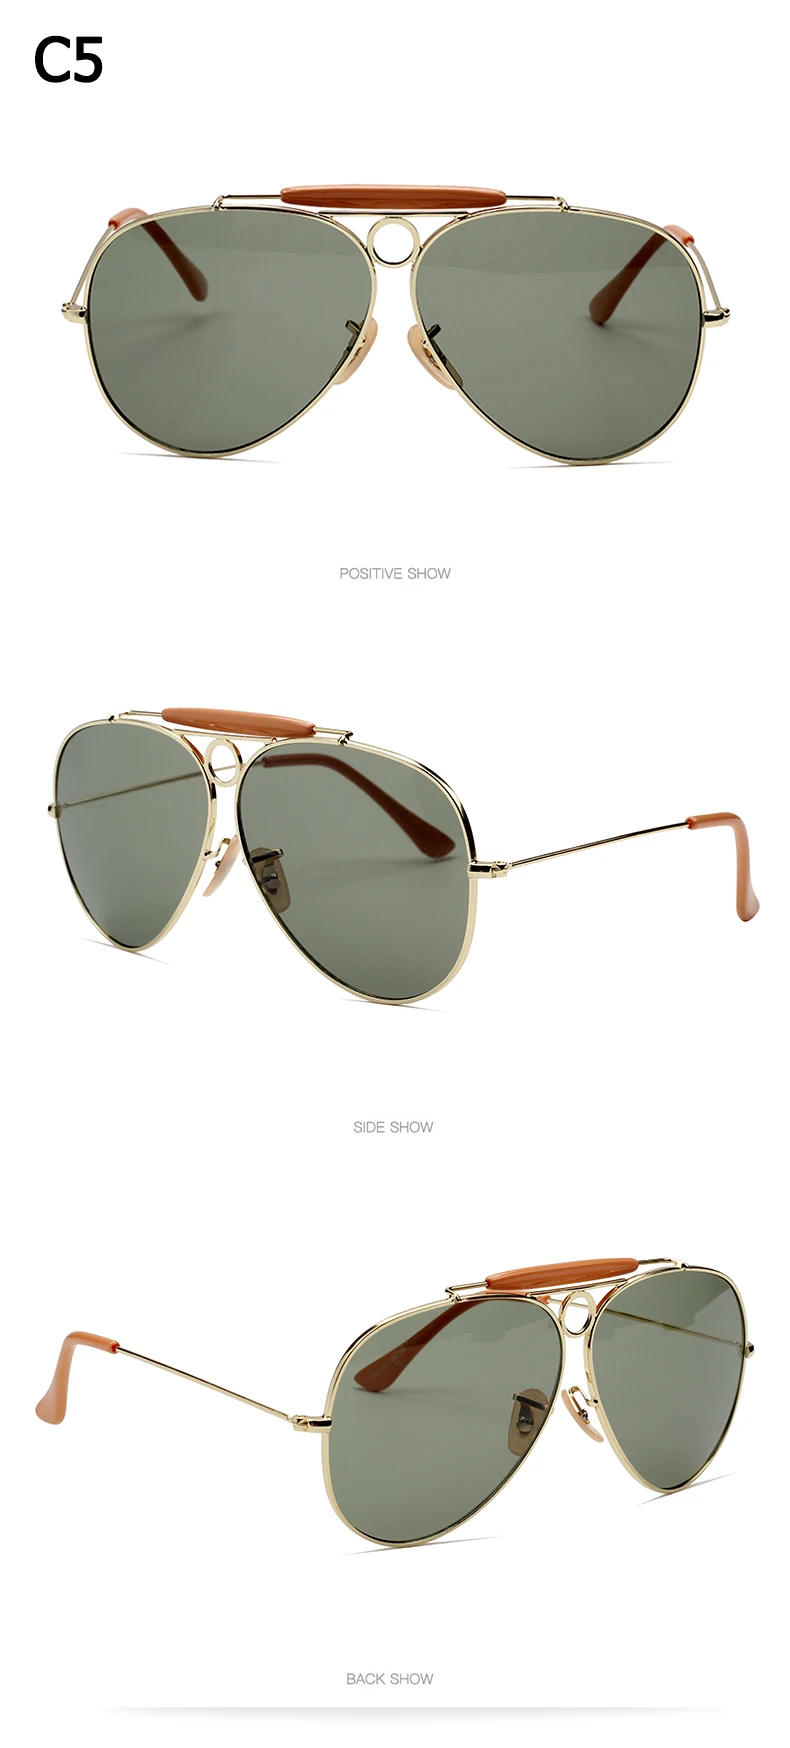 JackJad Новая мода 3138 шутер стиль винтажные авиационные Солнцезащитные очки металлический круг фирменный дизайн солнцезащитные очки Oculos De Sol с капюшоном